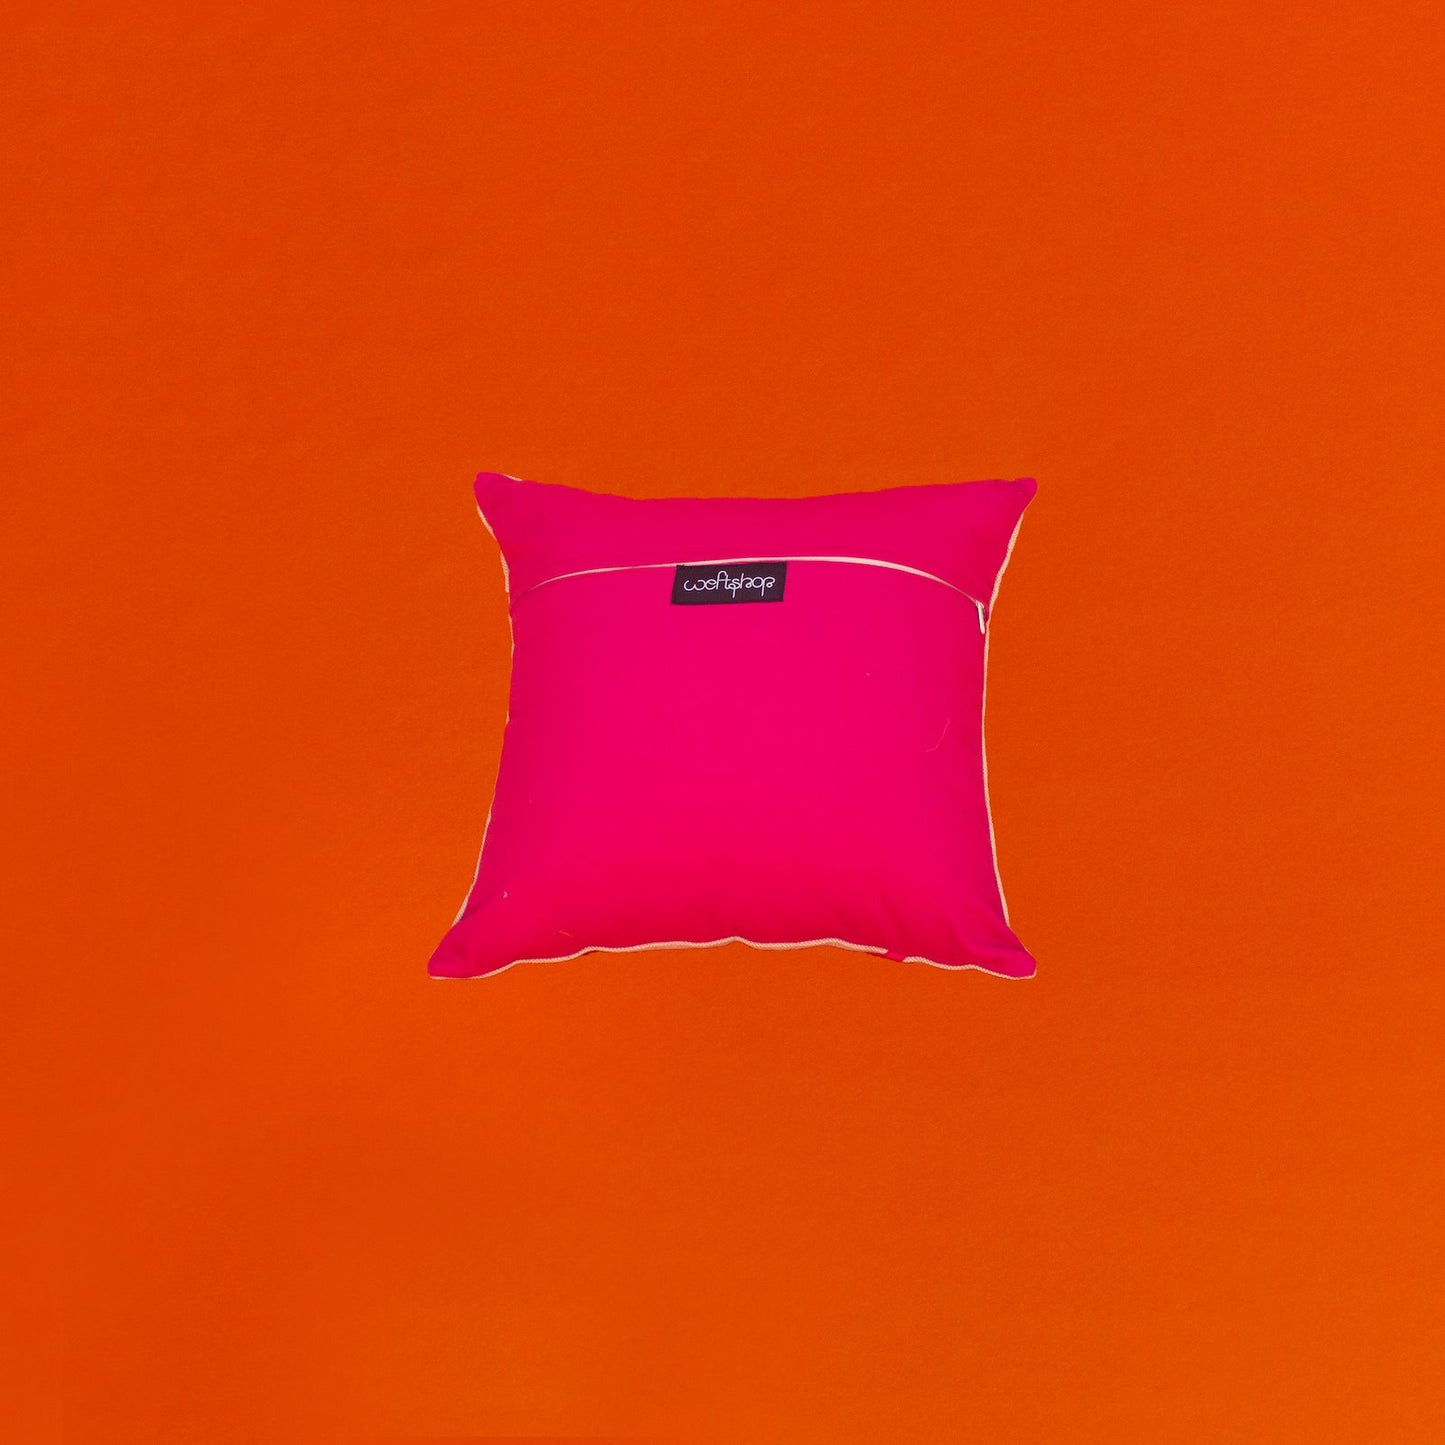 Cockatoo Cushion in Hot Pink WEFTshop 